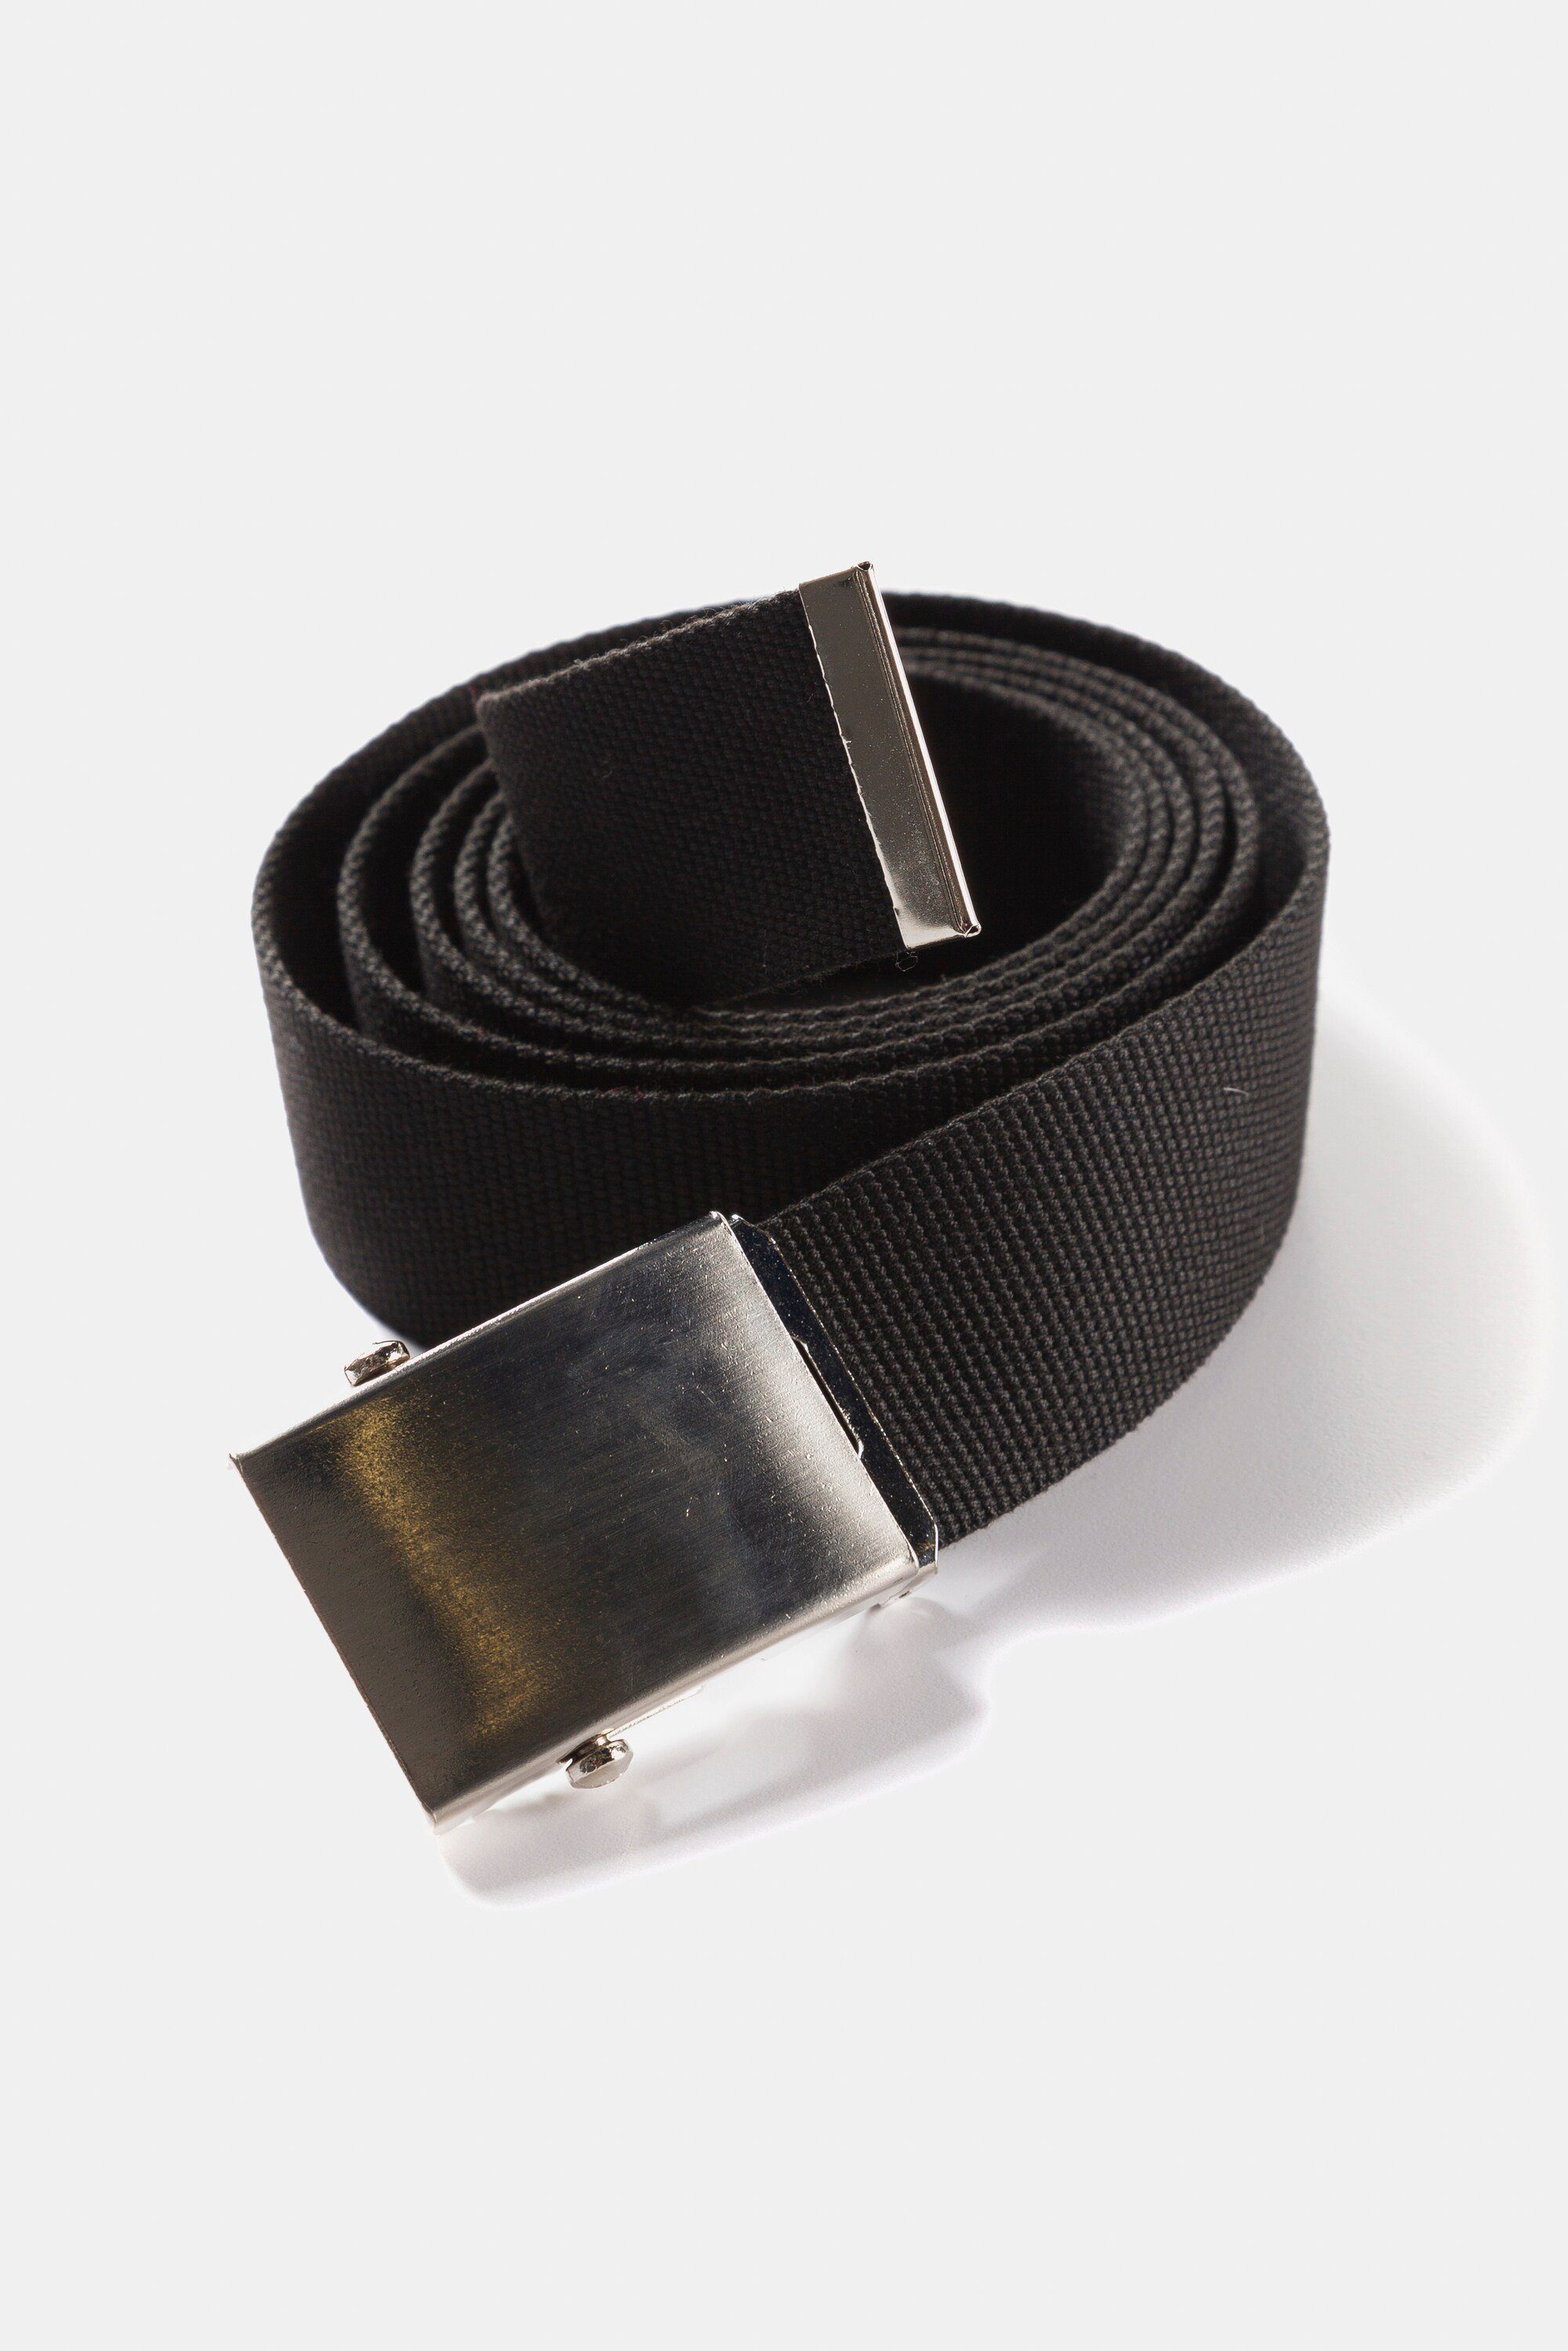 Hüftgürtel kürzen Gürtel Stoffband einfach schwarz JP1880 zu Metallschließe